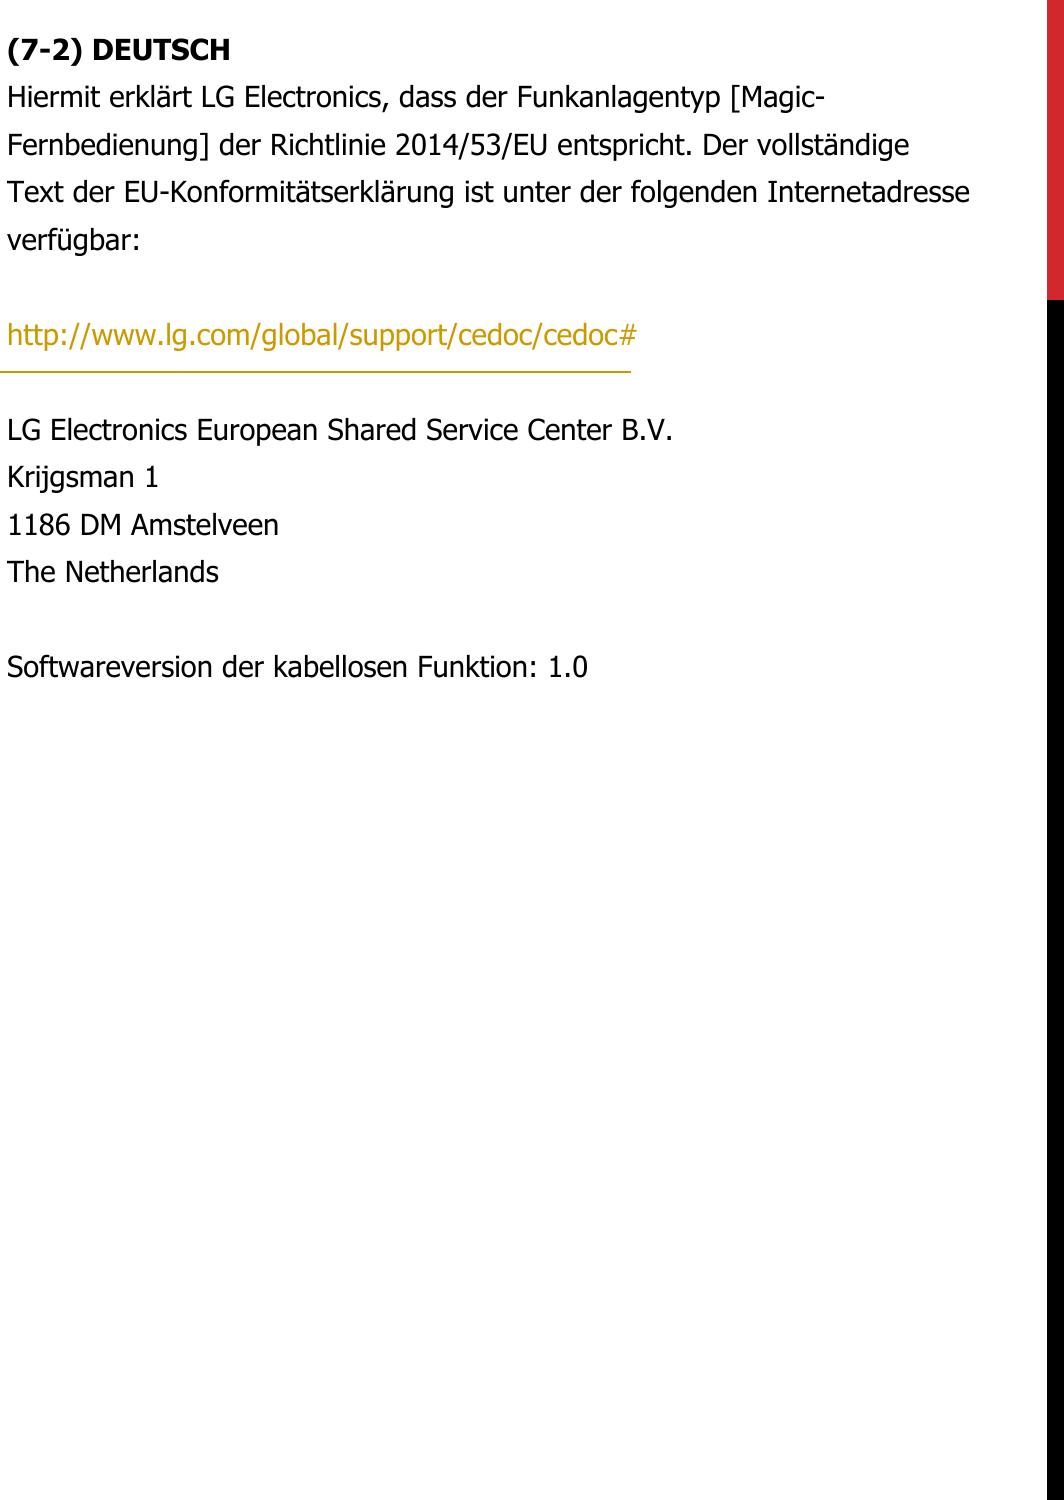 (7-2) DEUTSCHHiermit erklärt LG Electronics, dass der Funkanlagentyp [Magic- Fernbedienung] der Richtlinie 2014/53/EU entspricht. Der vollständige  Text der EU-Konformitätserklärung ist unter der folgenden Internetadresse  verfügbar:     http://www.lg.com/global/support/cedoc/cedoc#     LG Electronics European Shared Service Center B.V.  Krijgsman 1  1186 DM Amstelveen  The Netherlands     Softwareversion der kabellosen Funktion: 1.0